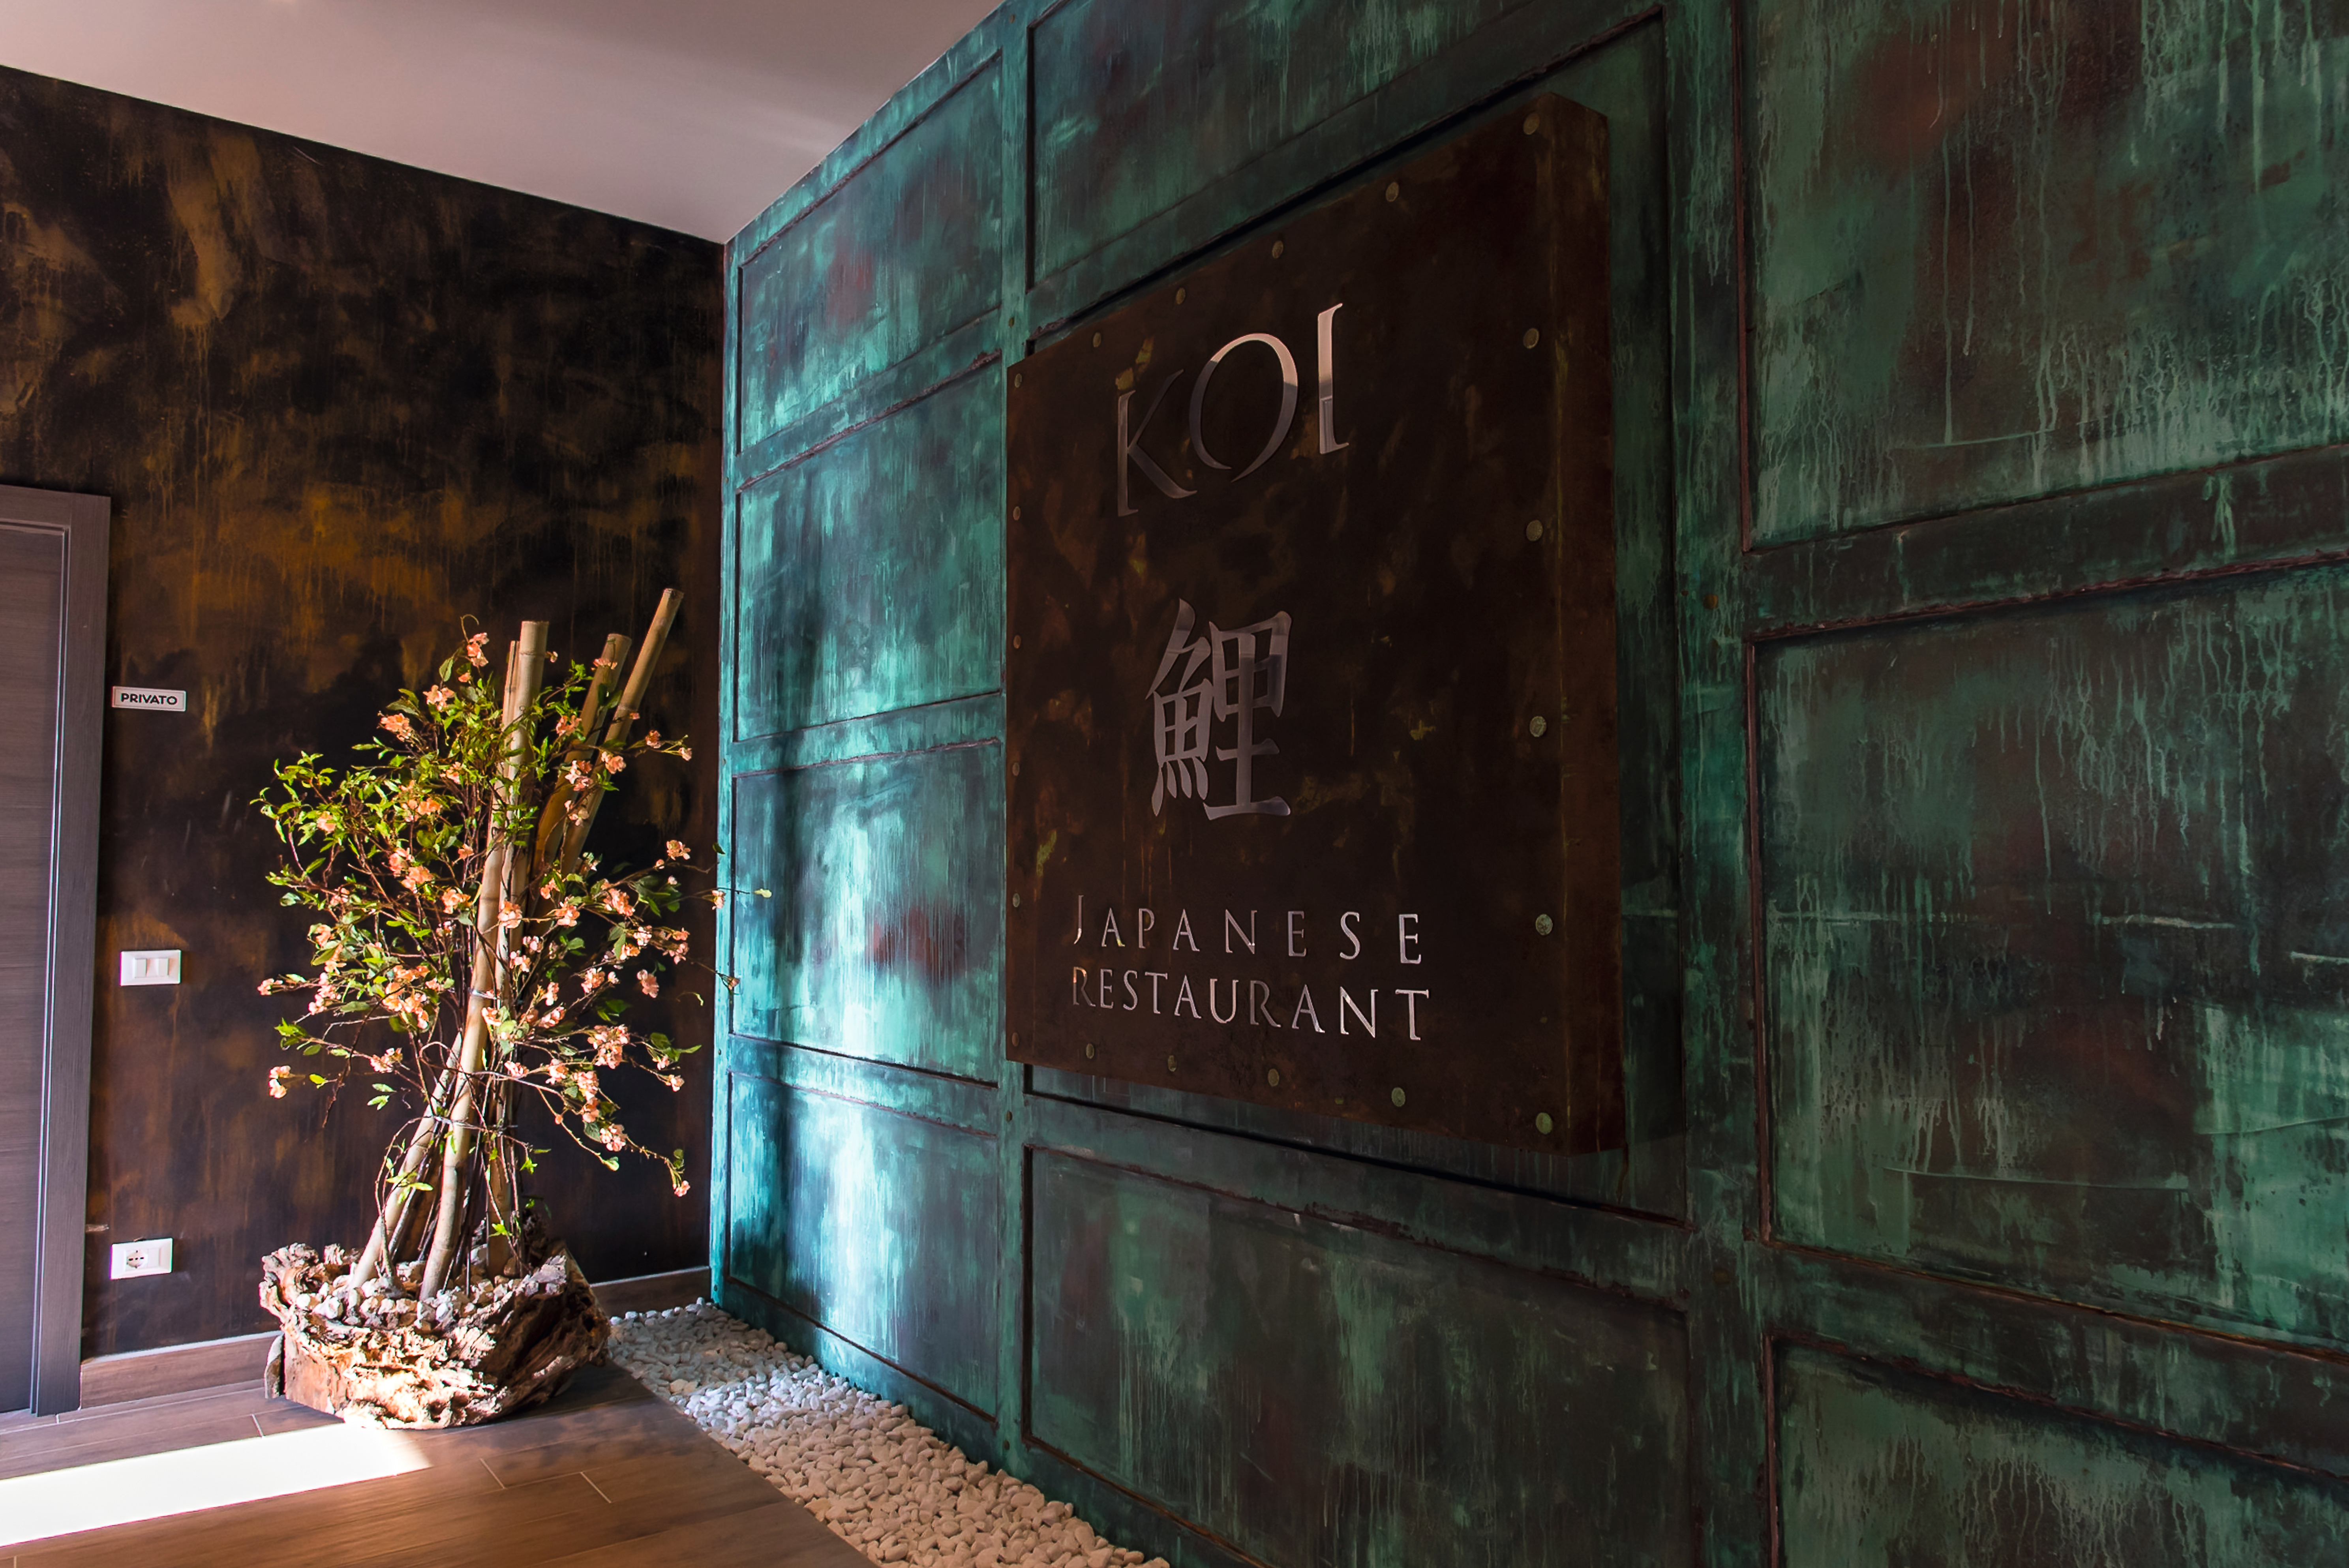 Il ristornate Koi accoglie i suoi ospiti in un ambiente asiatico.